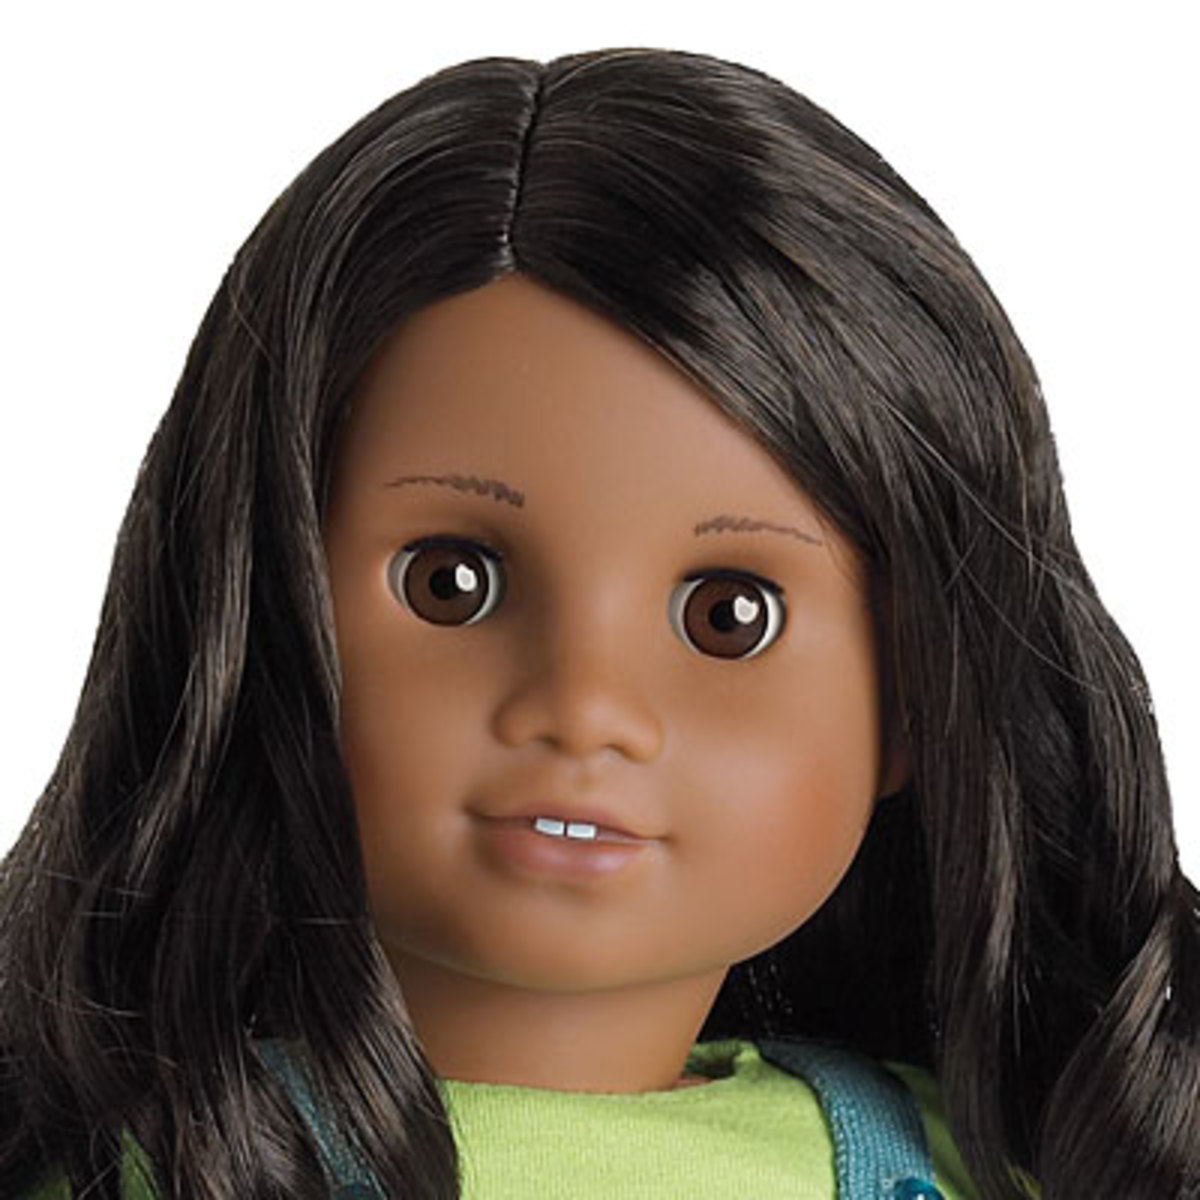 American Girl Doll Sonali Mold Comparison